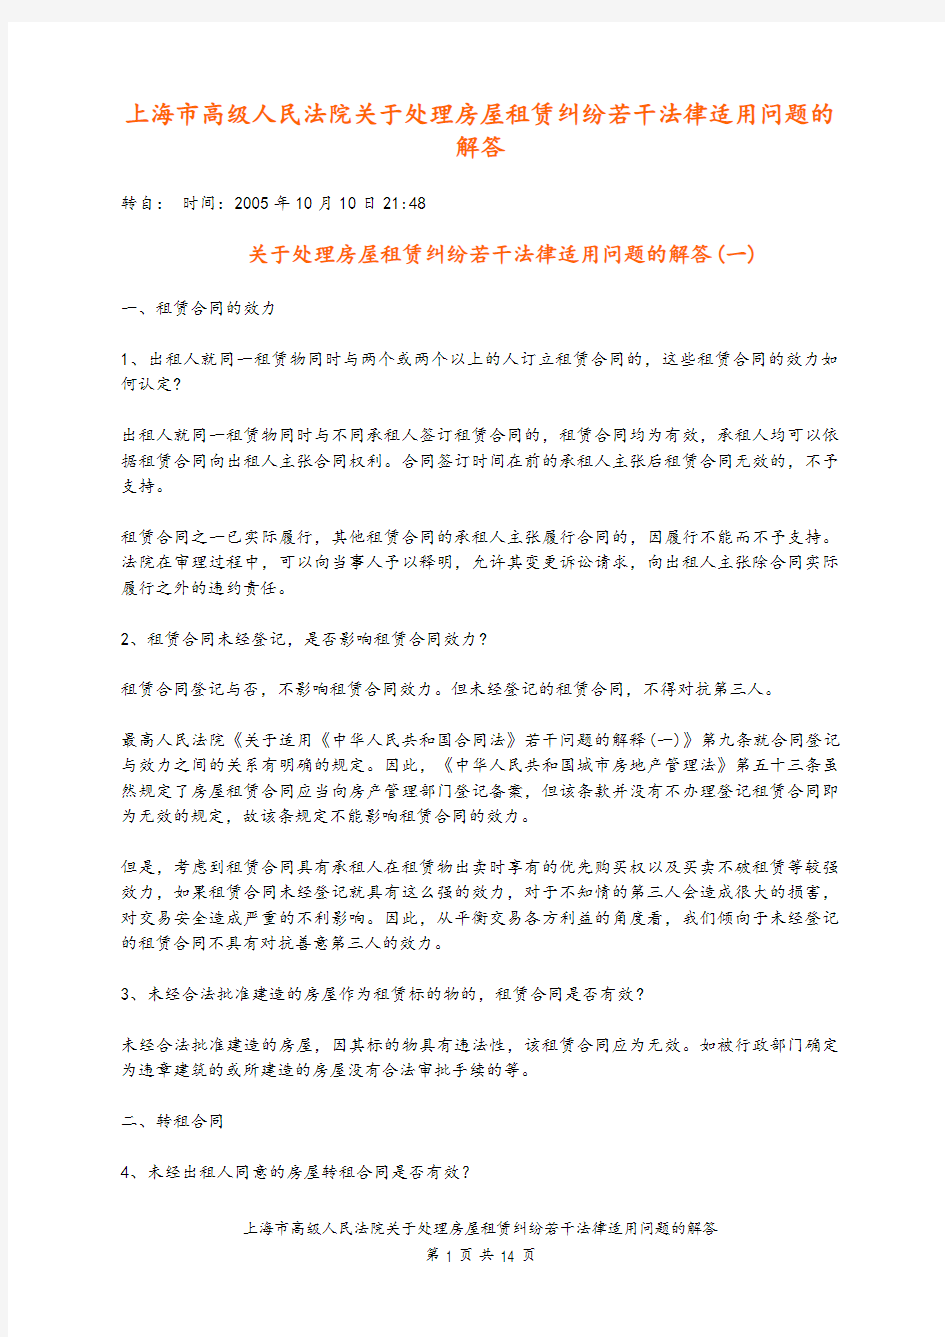 上海市高级人民法院关于处理房屋租赁纠纷若干法律适用问题的解答